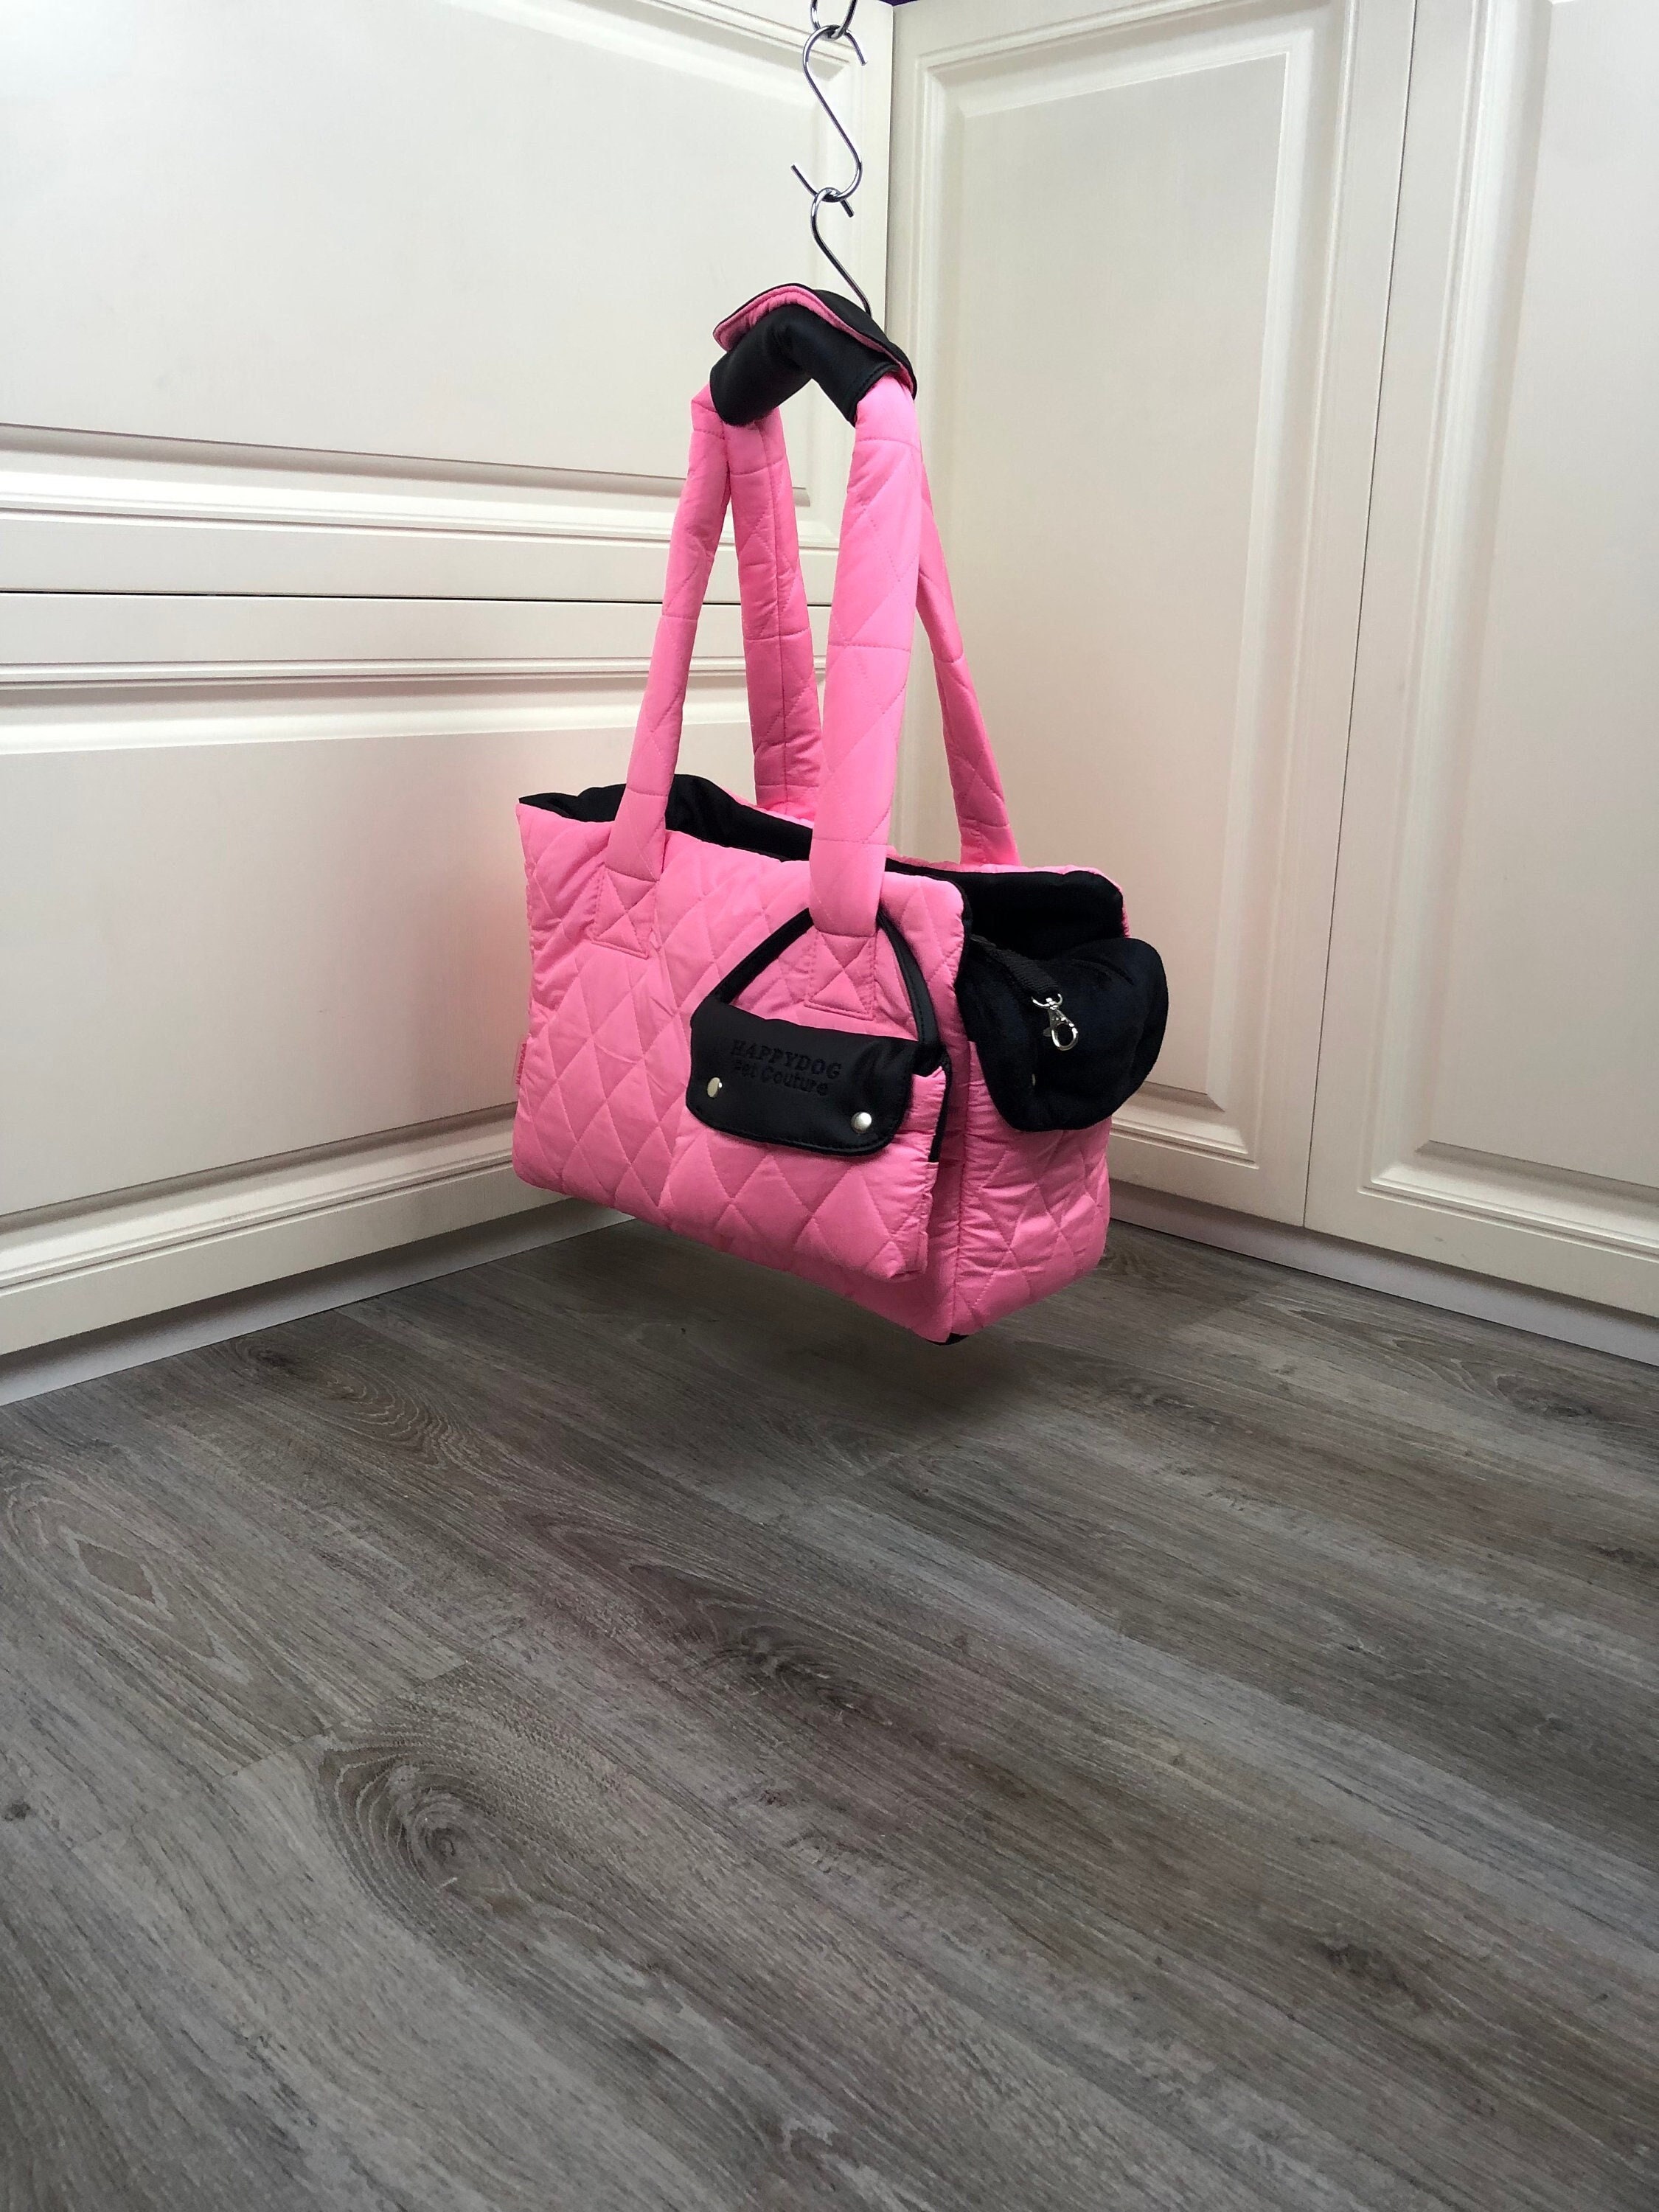 Shop Louis Vuitton MONOGRAM Dog bag (M45662) by iRodori03